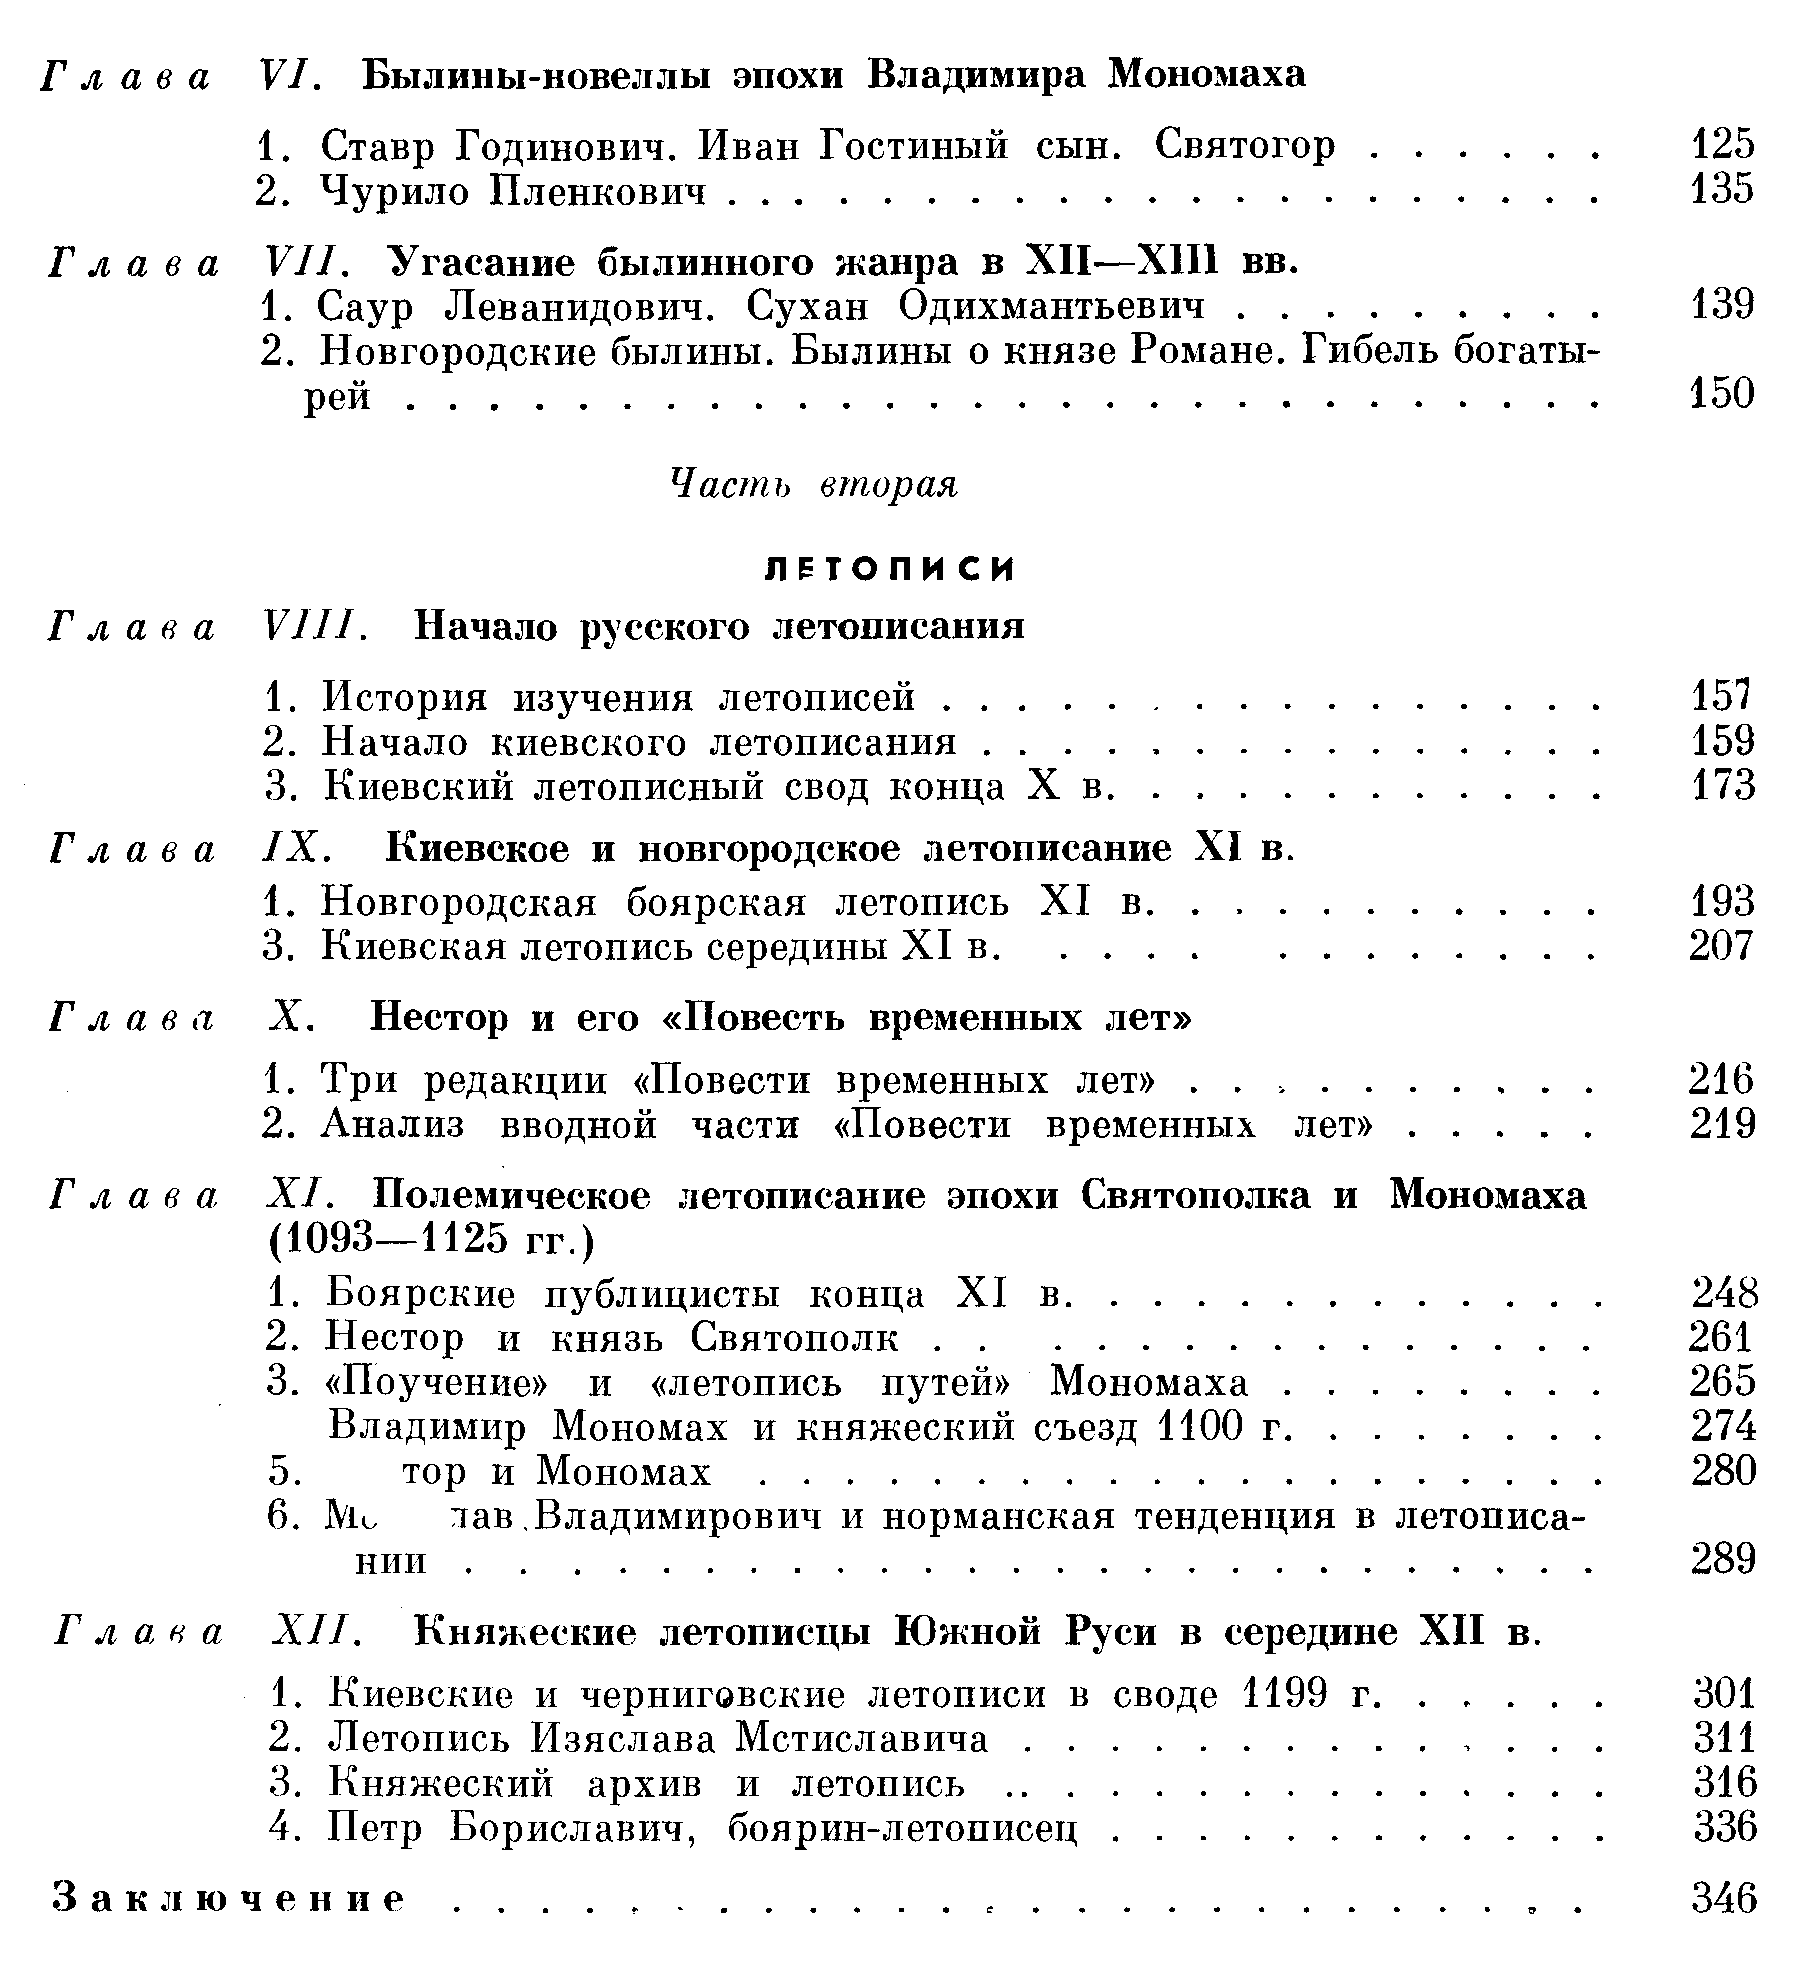 Рыбаков Б. А. Древняя Русь. Сказания, былины, летописи. 1963 г. 